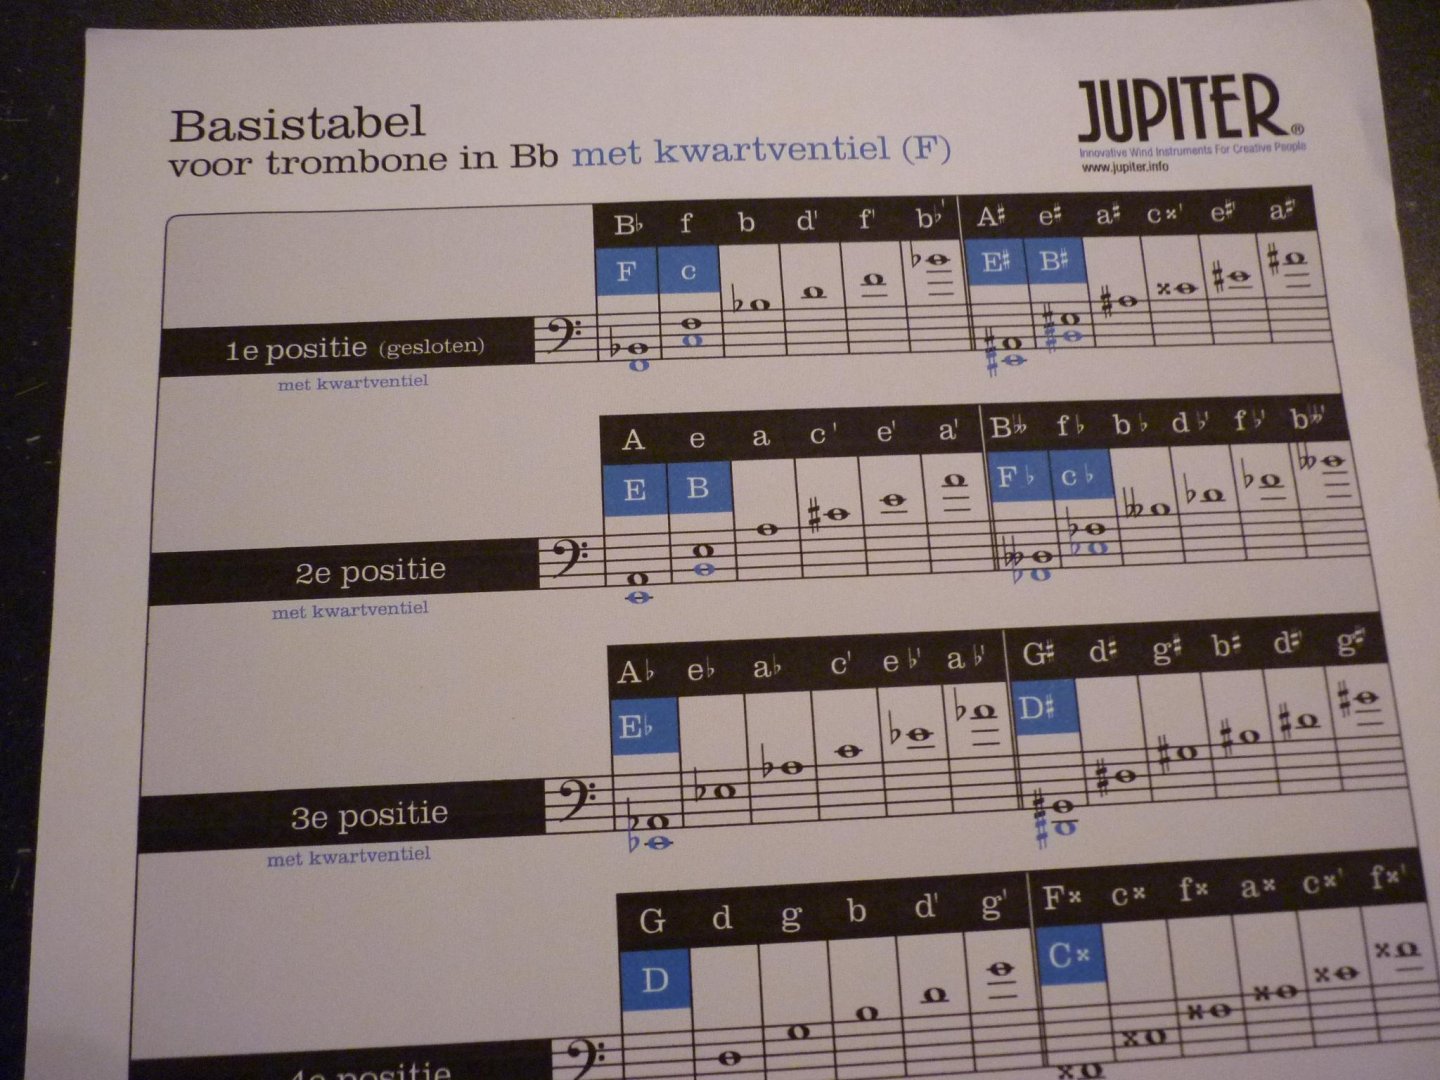 Clodomir; Pierre Francois († 1884) - Uitgebreide methode; Tuba en ventiel Trombone - Deel 1; Bewerkt door Jan W. Singerling